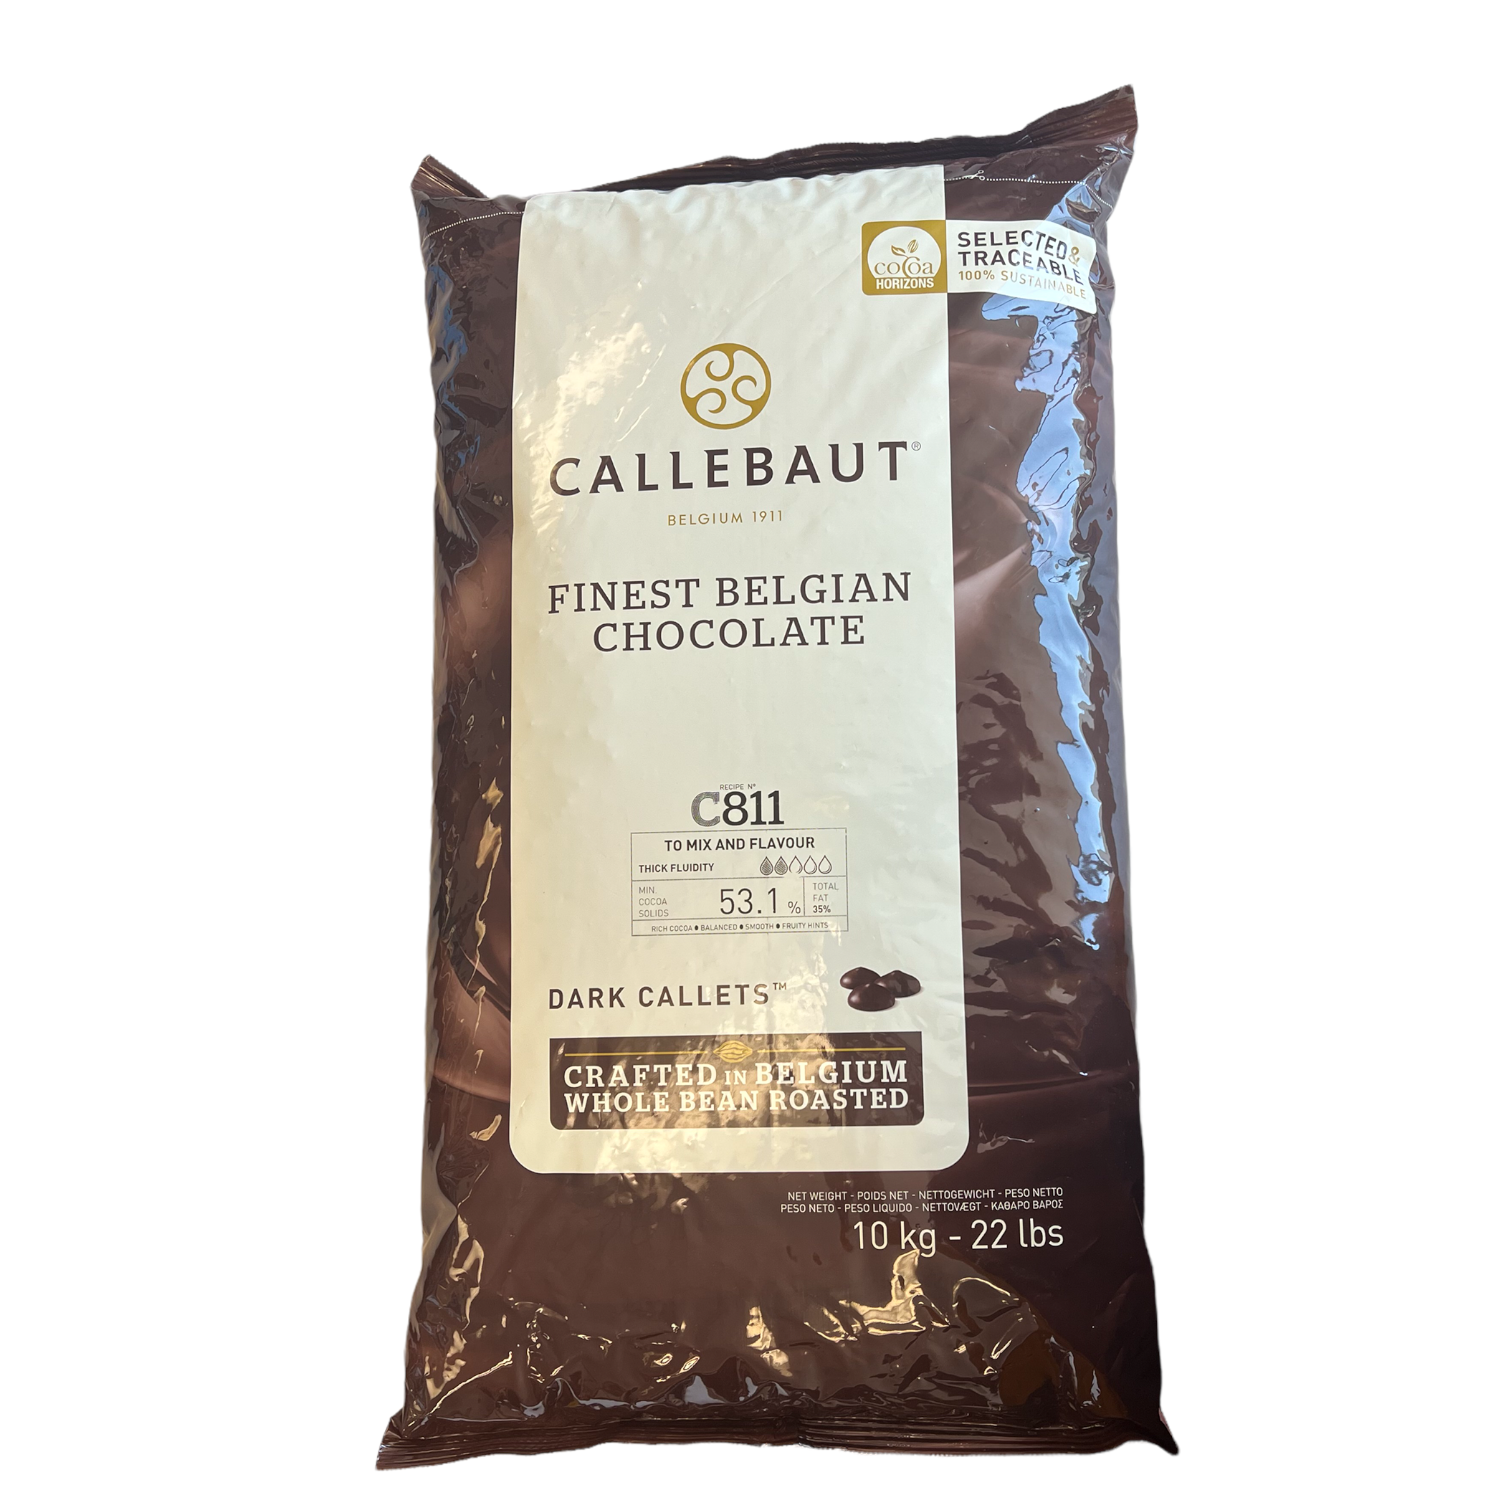 Cacao Barry Fleur de Cao 70% Dark Chocolate Couverture (11 lb